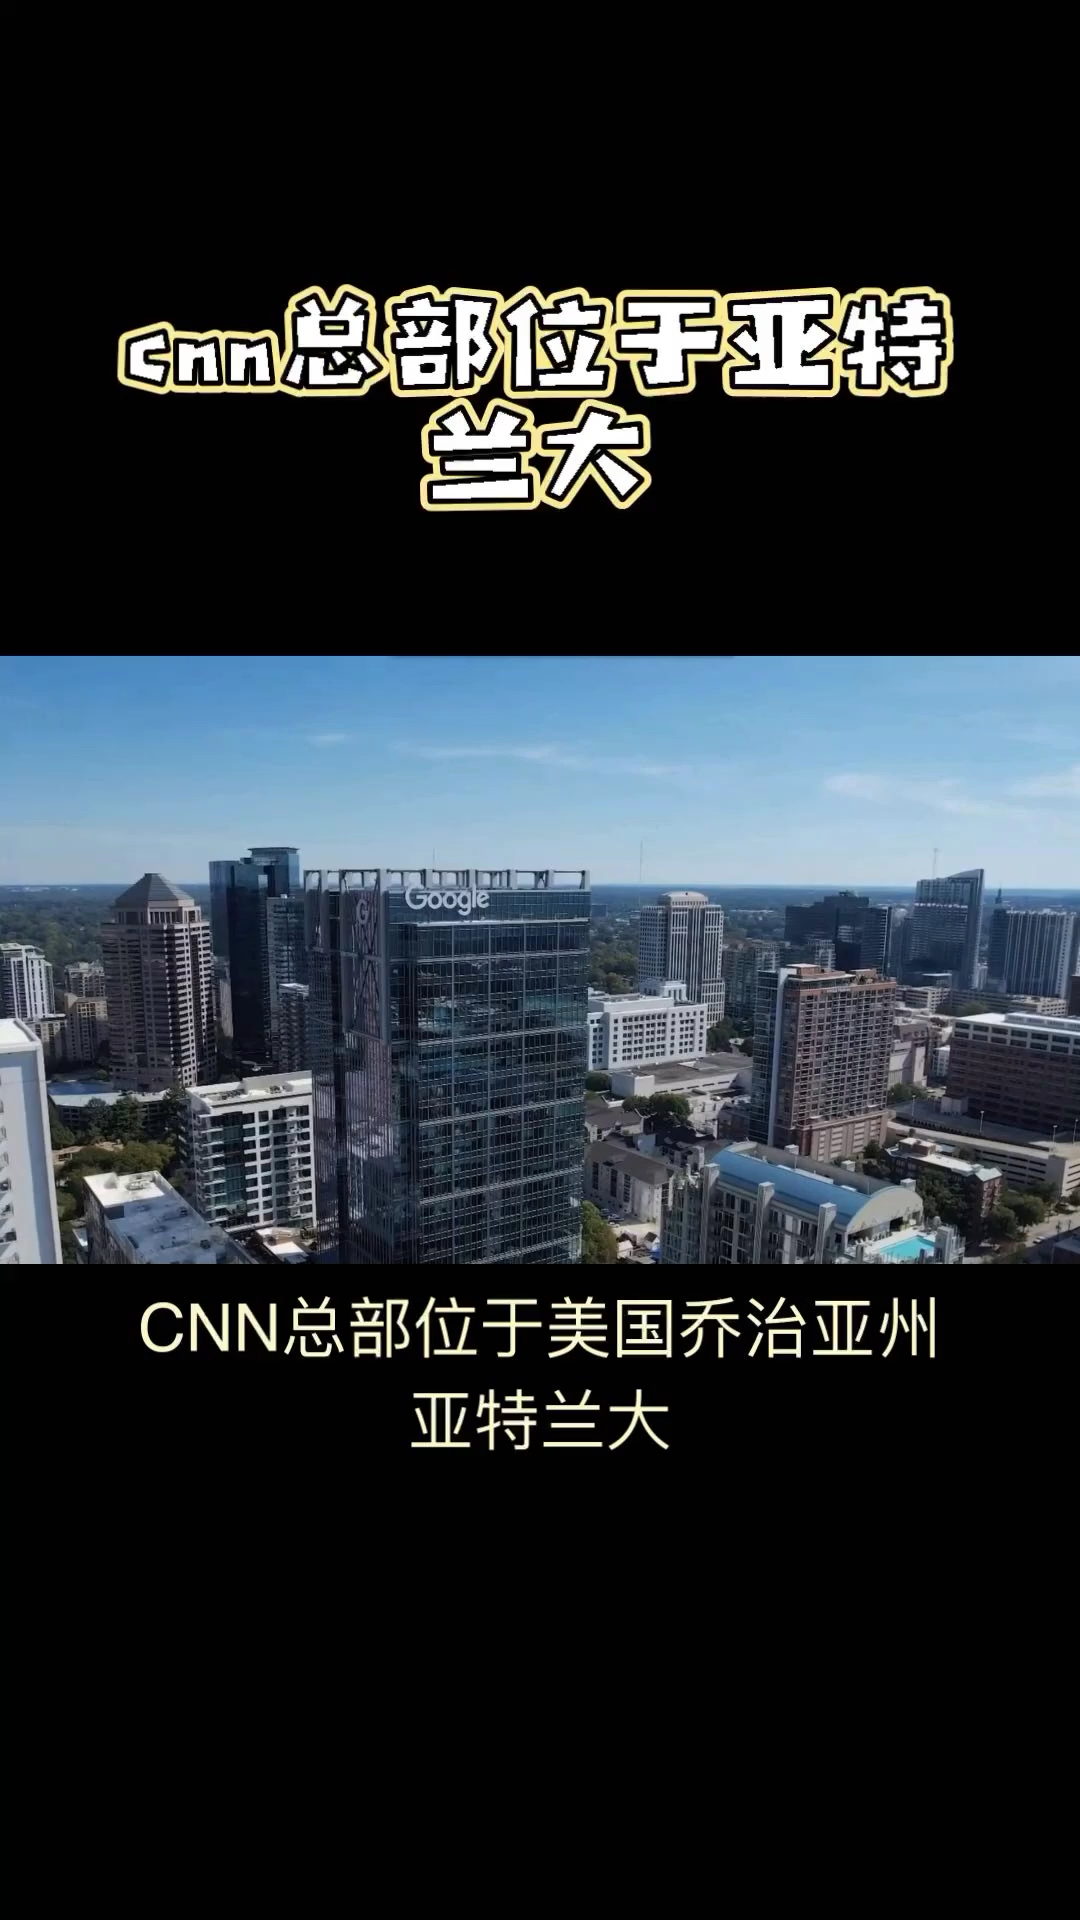 CNN Center：全球新闻传播者的标志性建筑